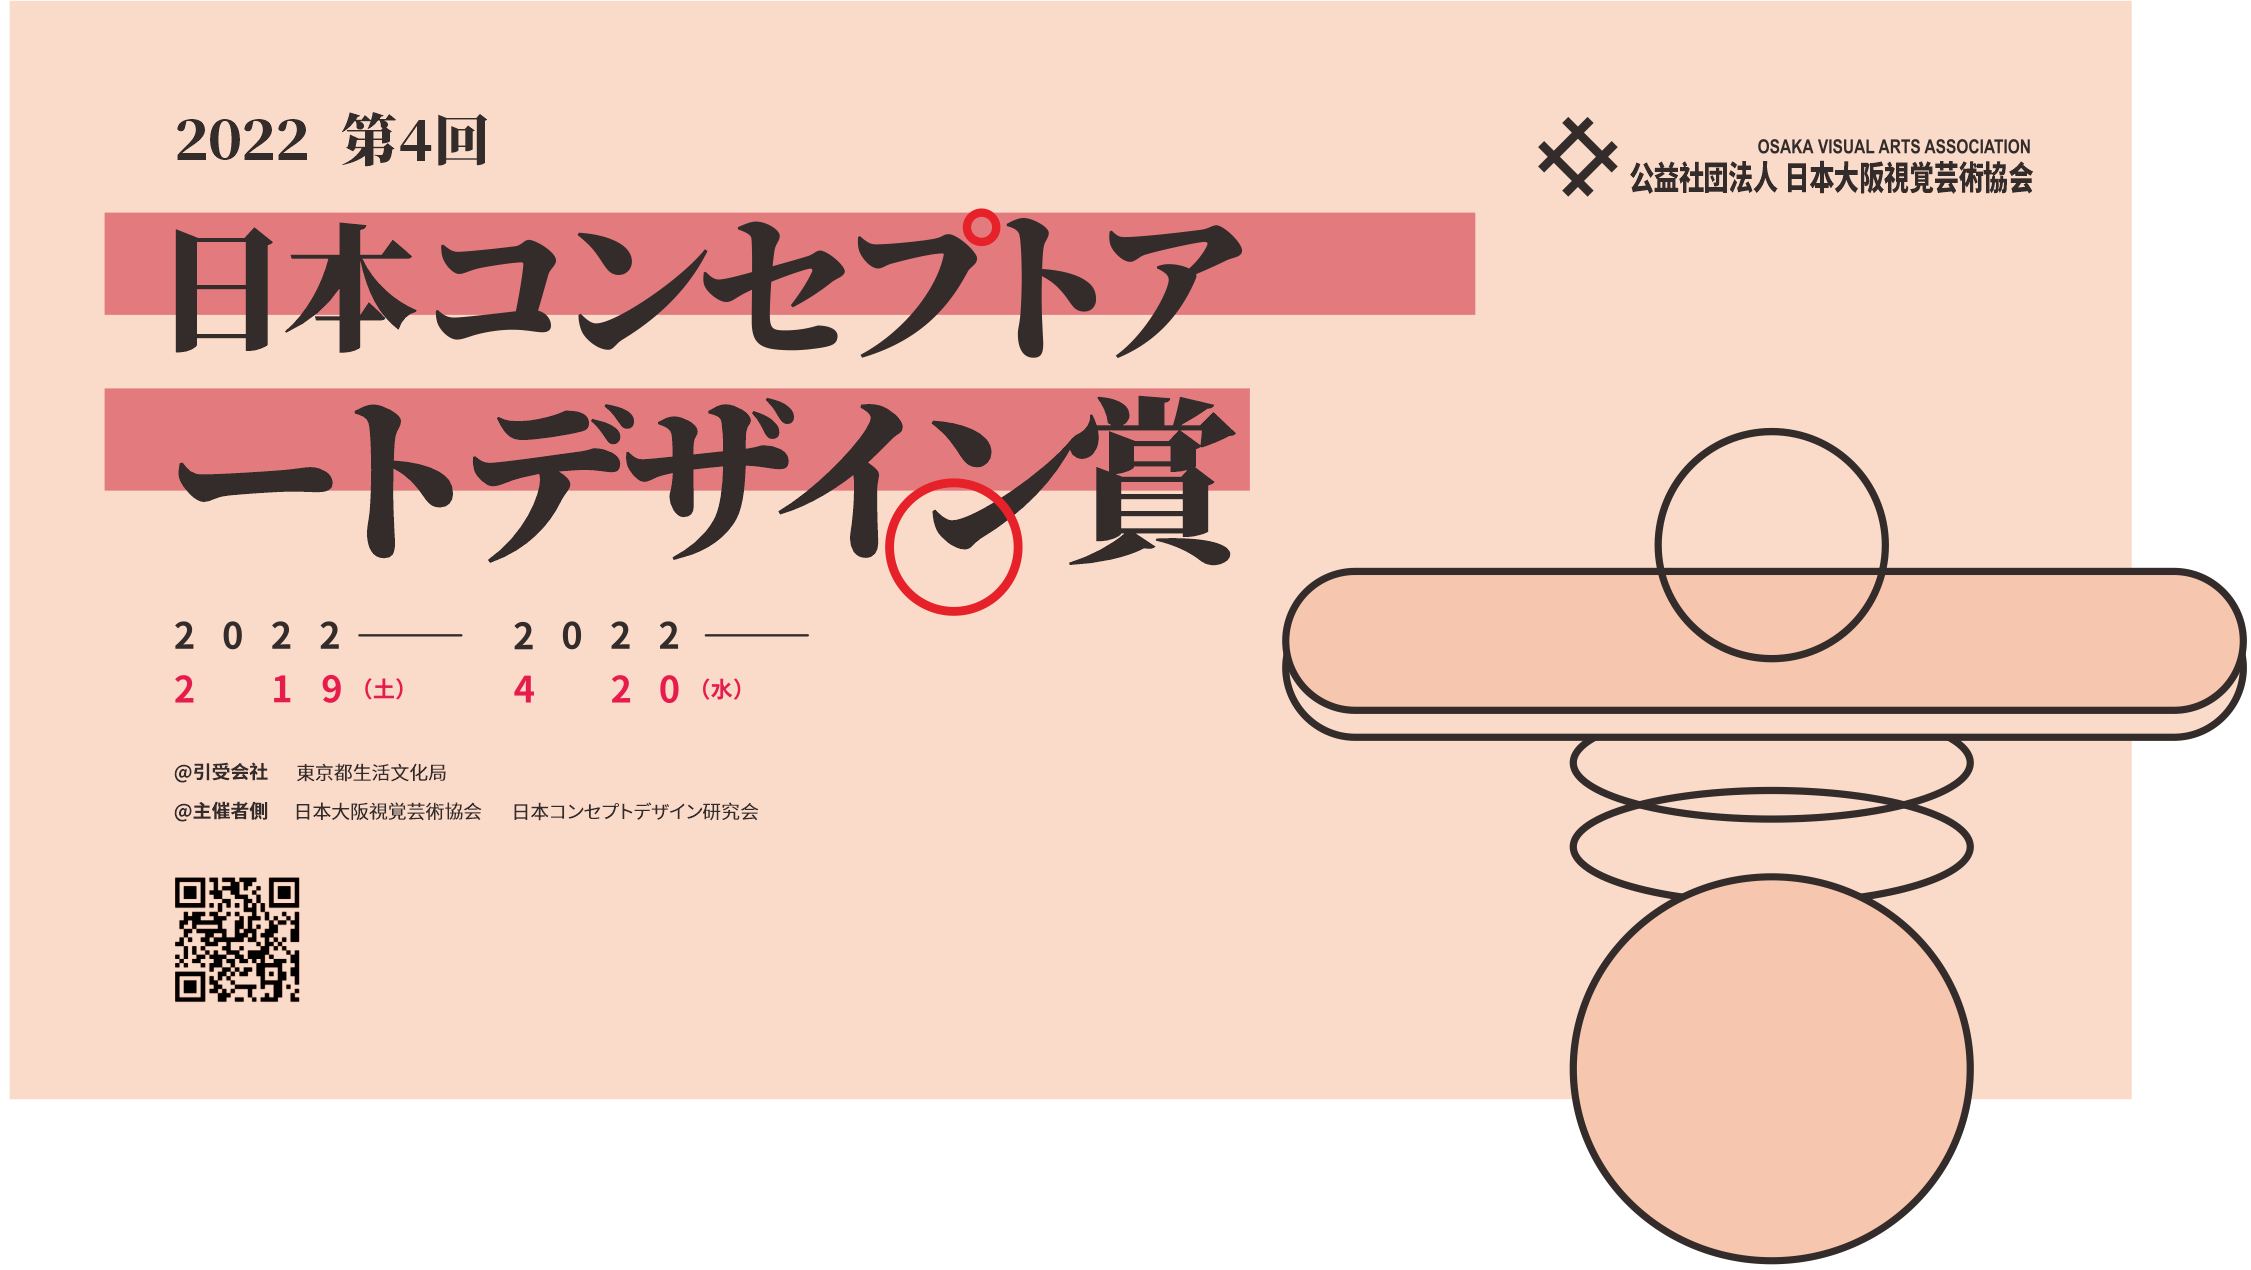 [已结束] 第四届 2022日本概念艺术设计奖-CNYISAI艺赛